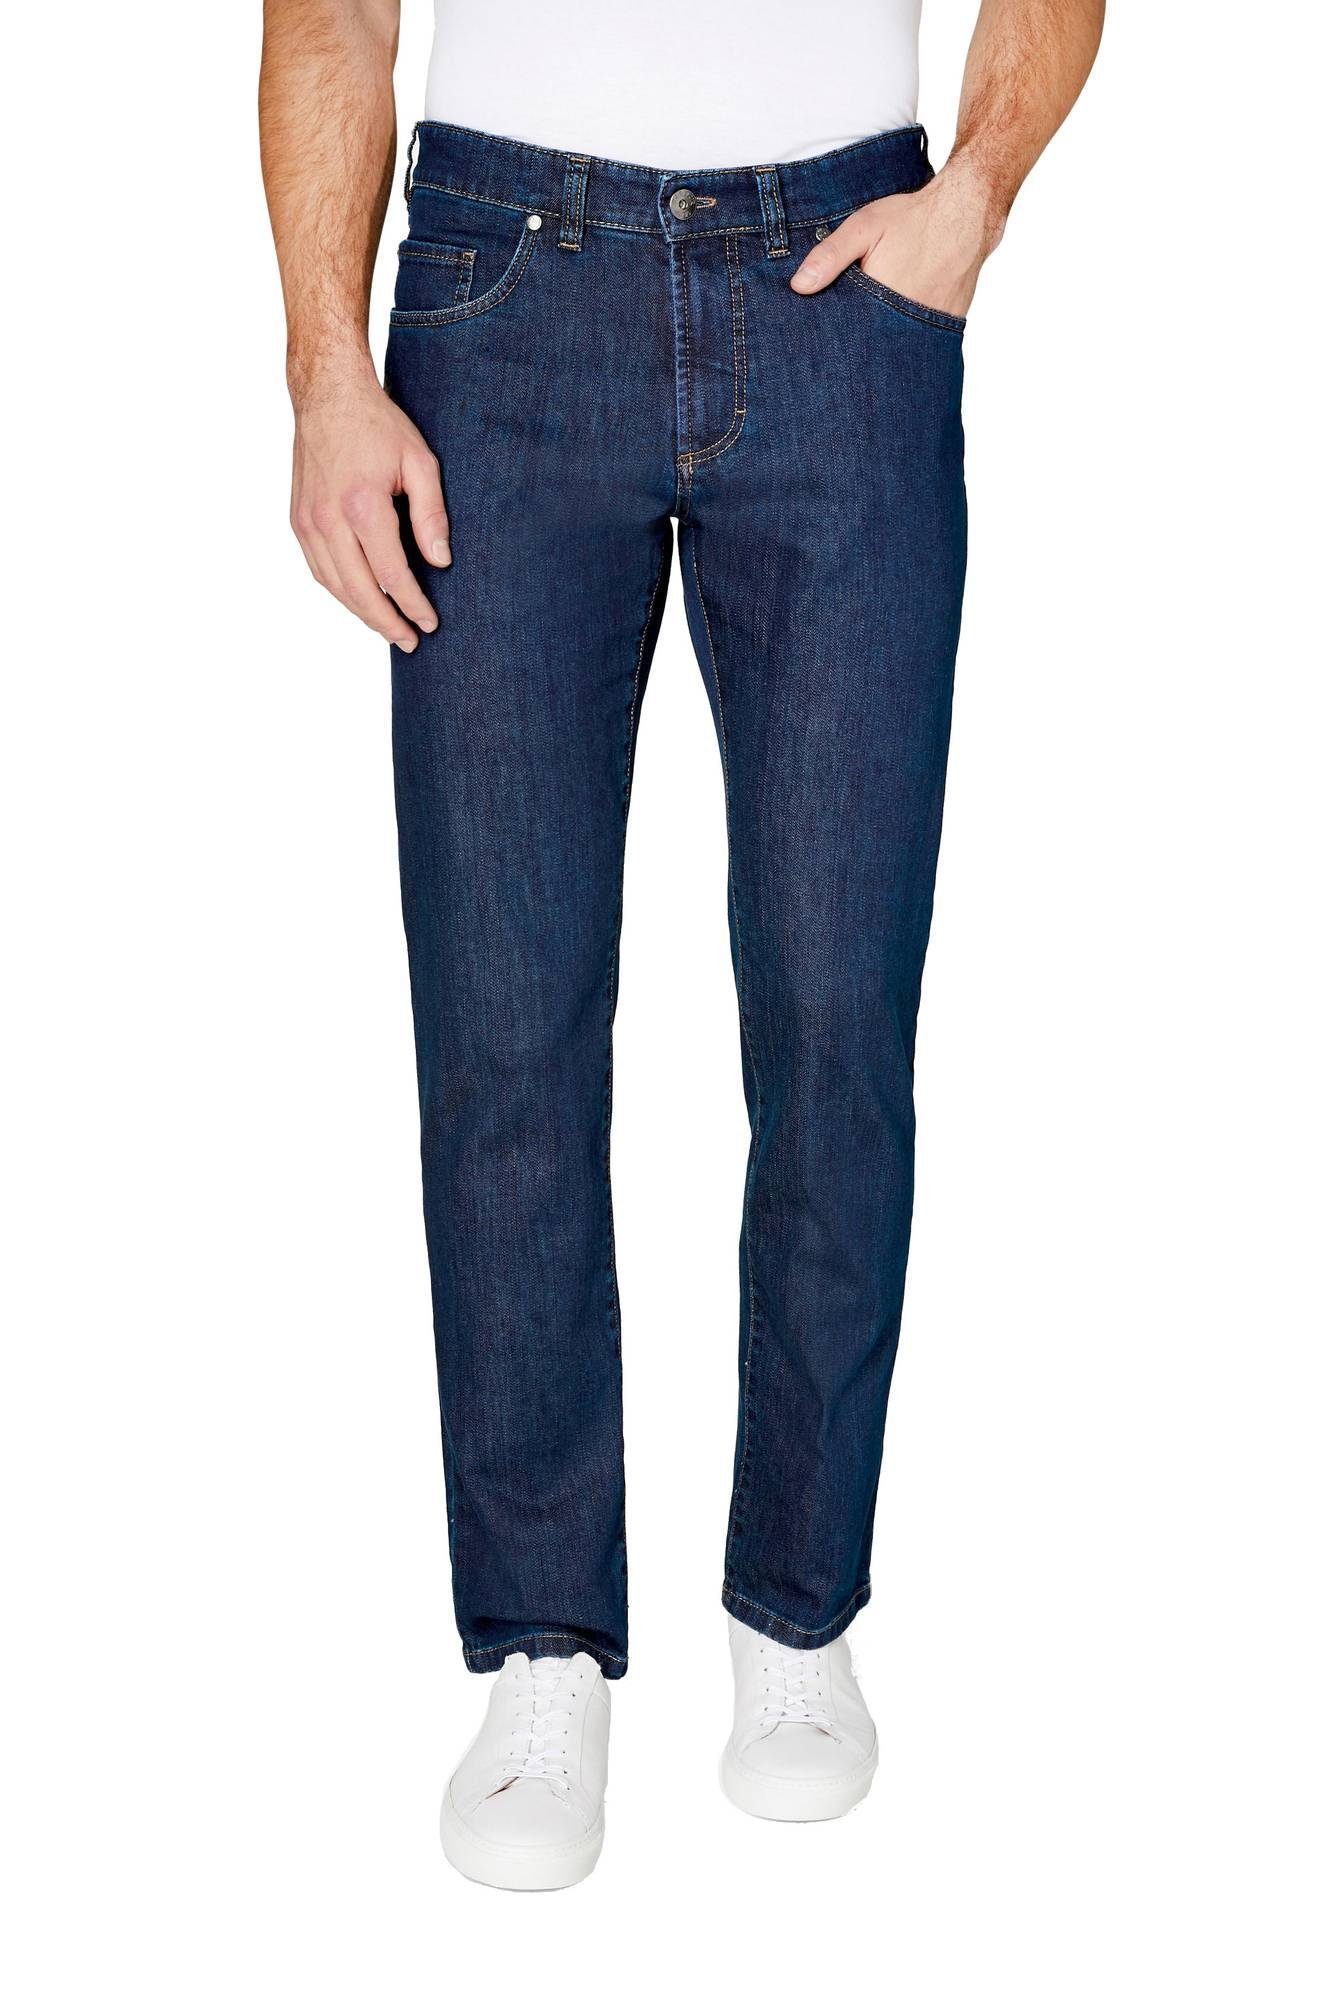 (0067) GARDEUR Indigo NEVIO-11 5-Pocket-Jeans Atelier 5-Pocket-Jeans